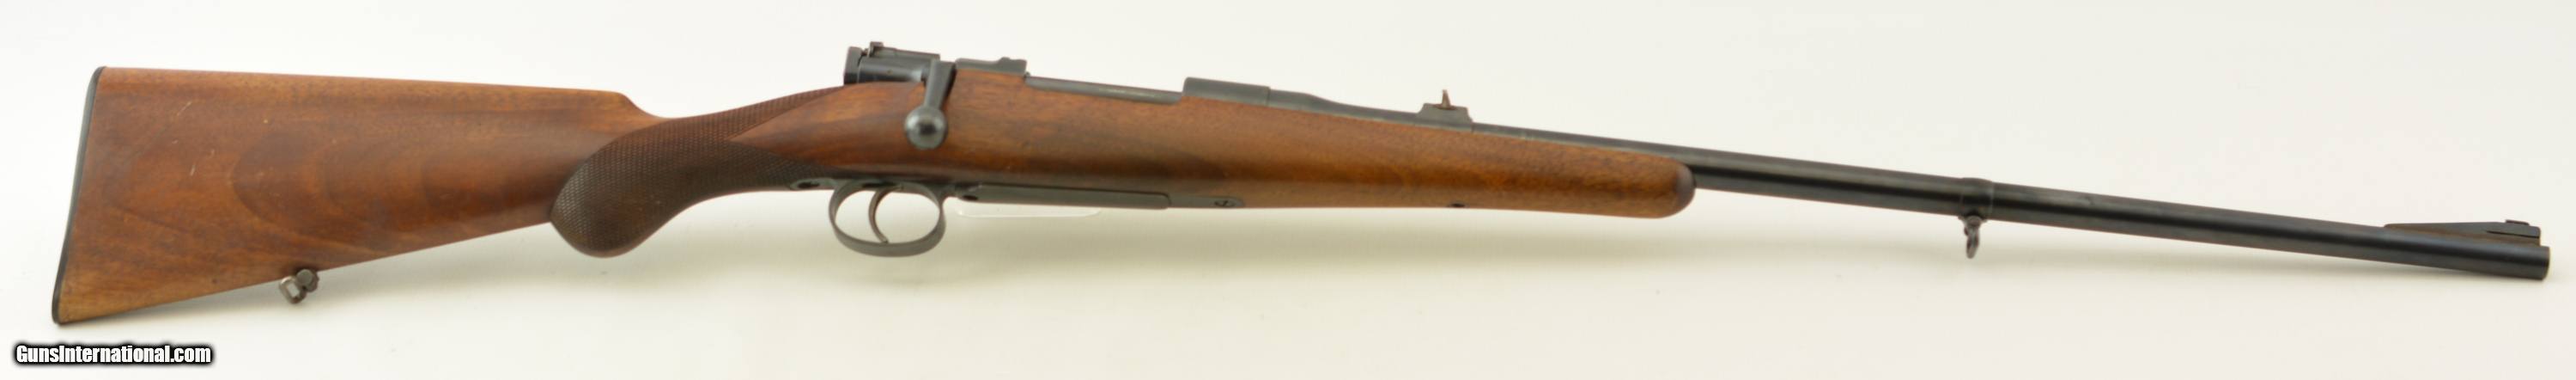 Husqvarna-Model-46-Sporting-Rifle-9-3x57mm_101322608_19081_BEF382BEEB222924.jpg